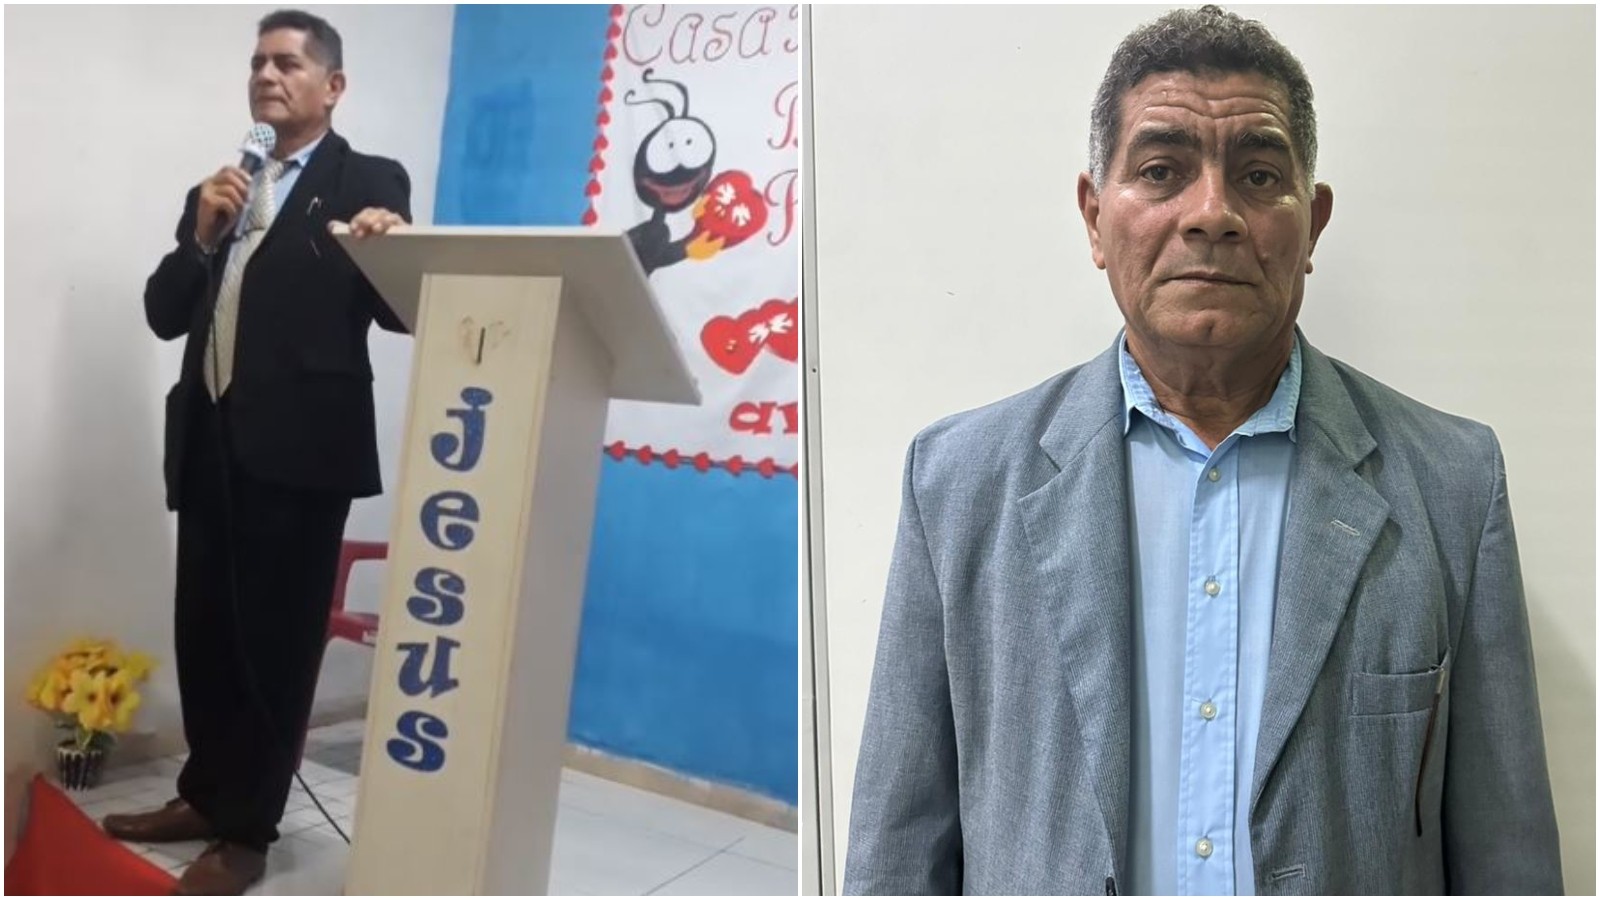 Pastor evangélico é preso em saída de culto por estupro de crianças em Fortaleza